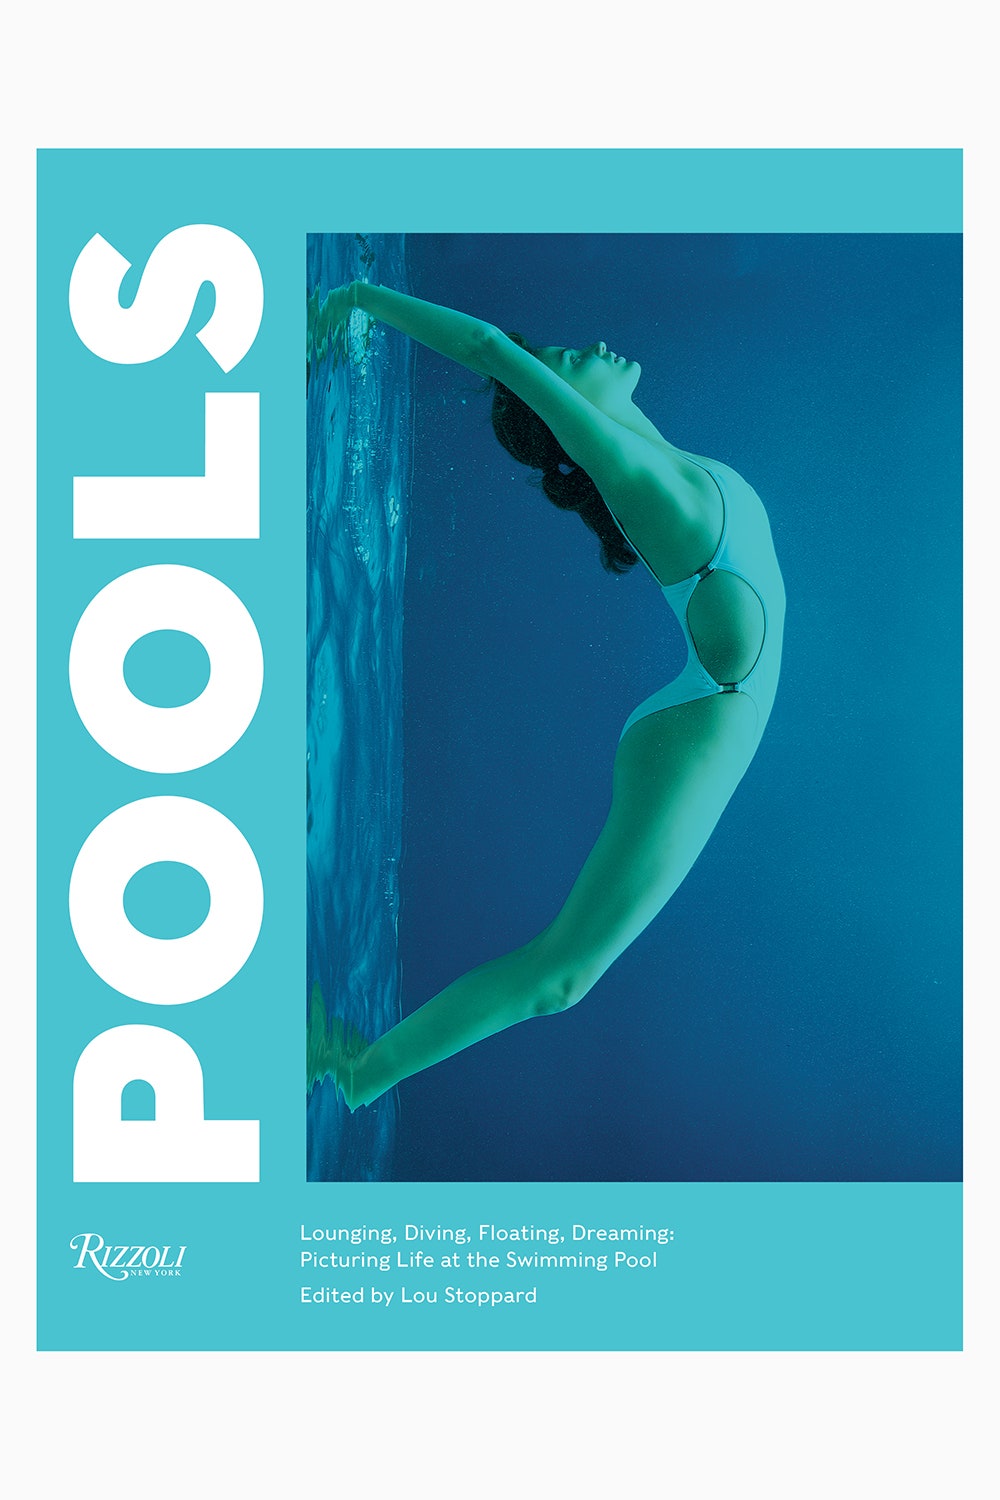 Фотографии бассейнов из новой книги Rizzoli — то что нужно в жару